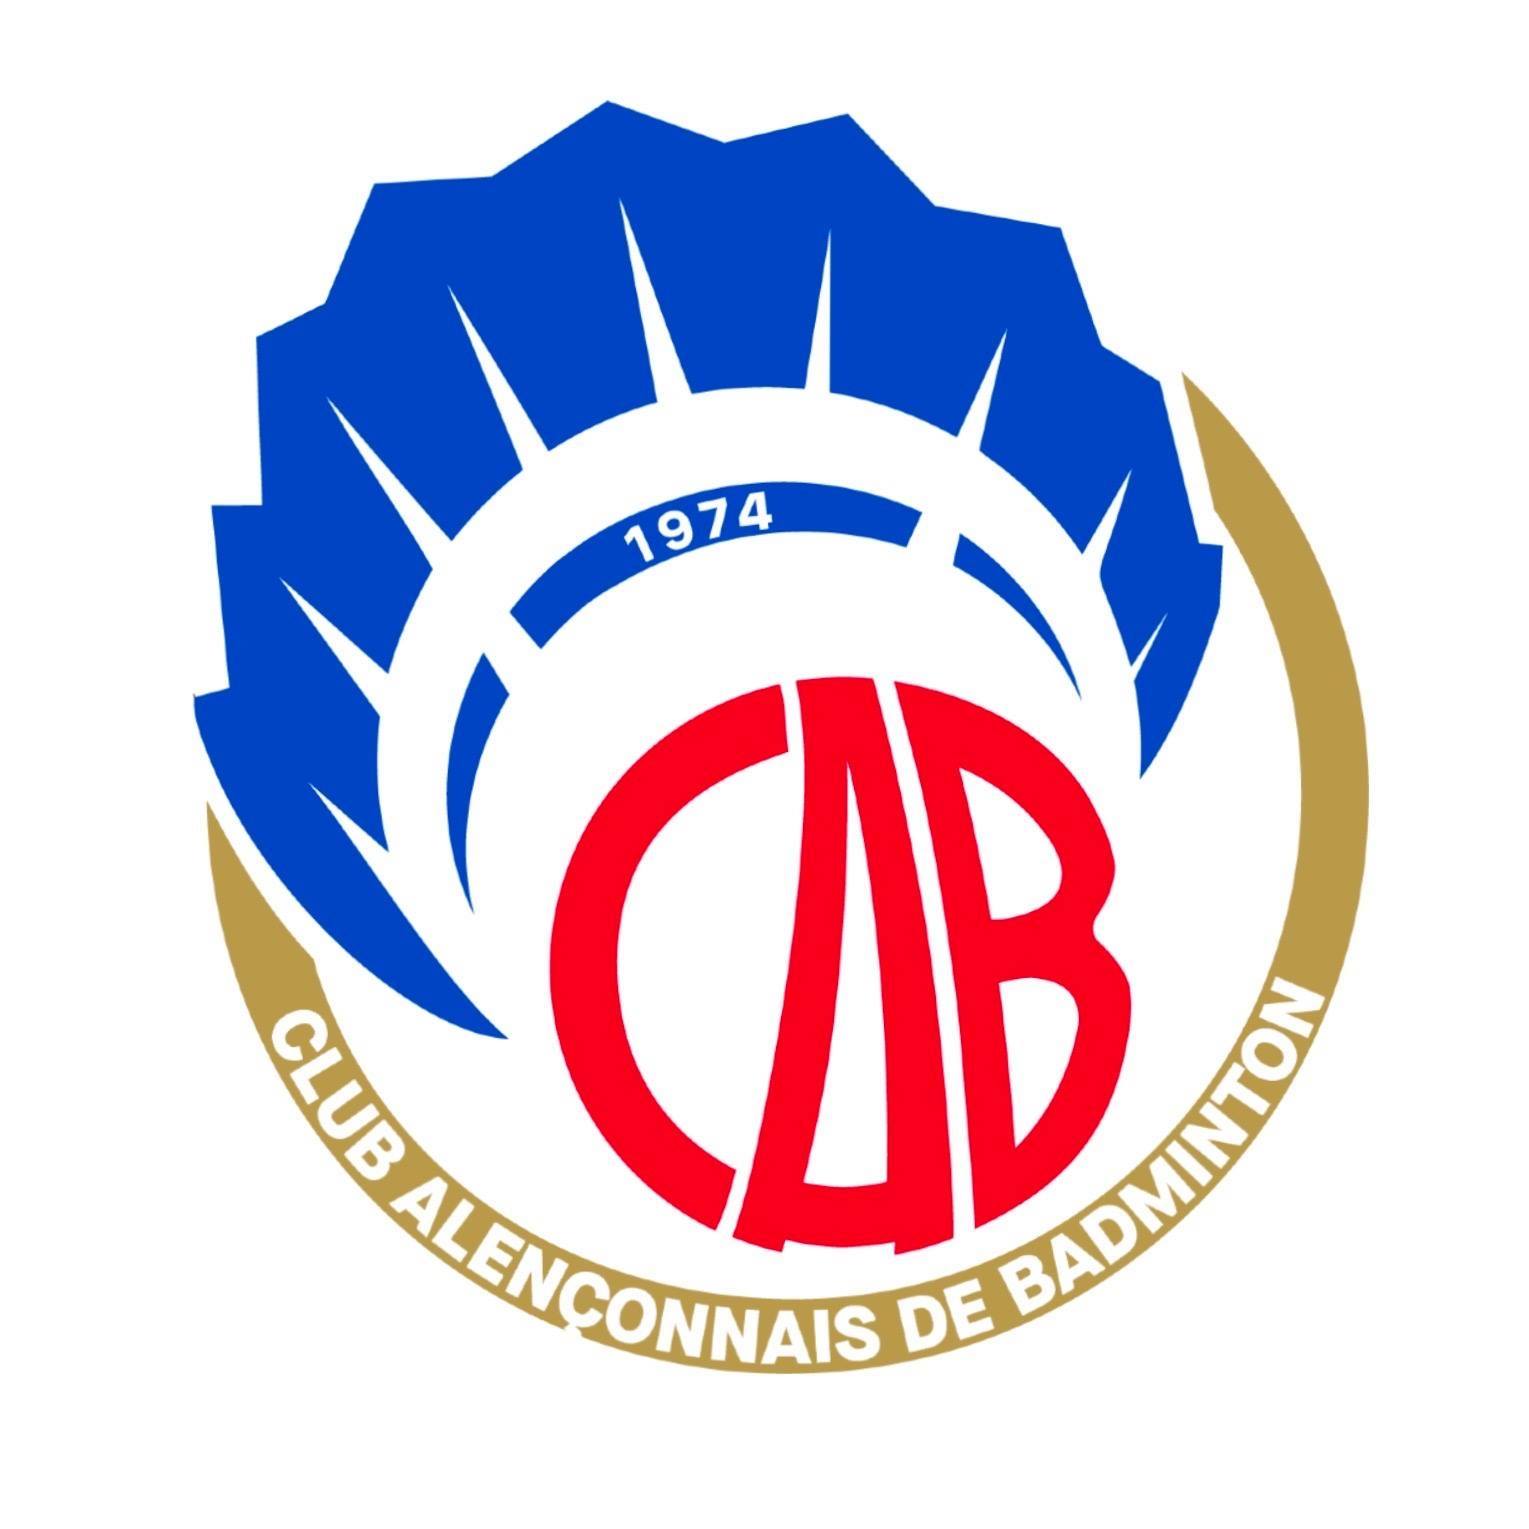 Logo CLUB ALENCONNAIS DE BADMINTON